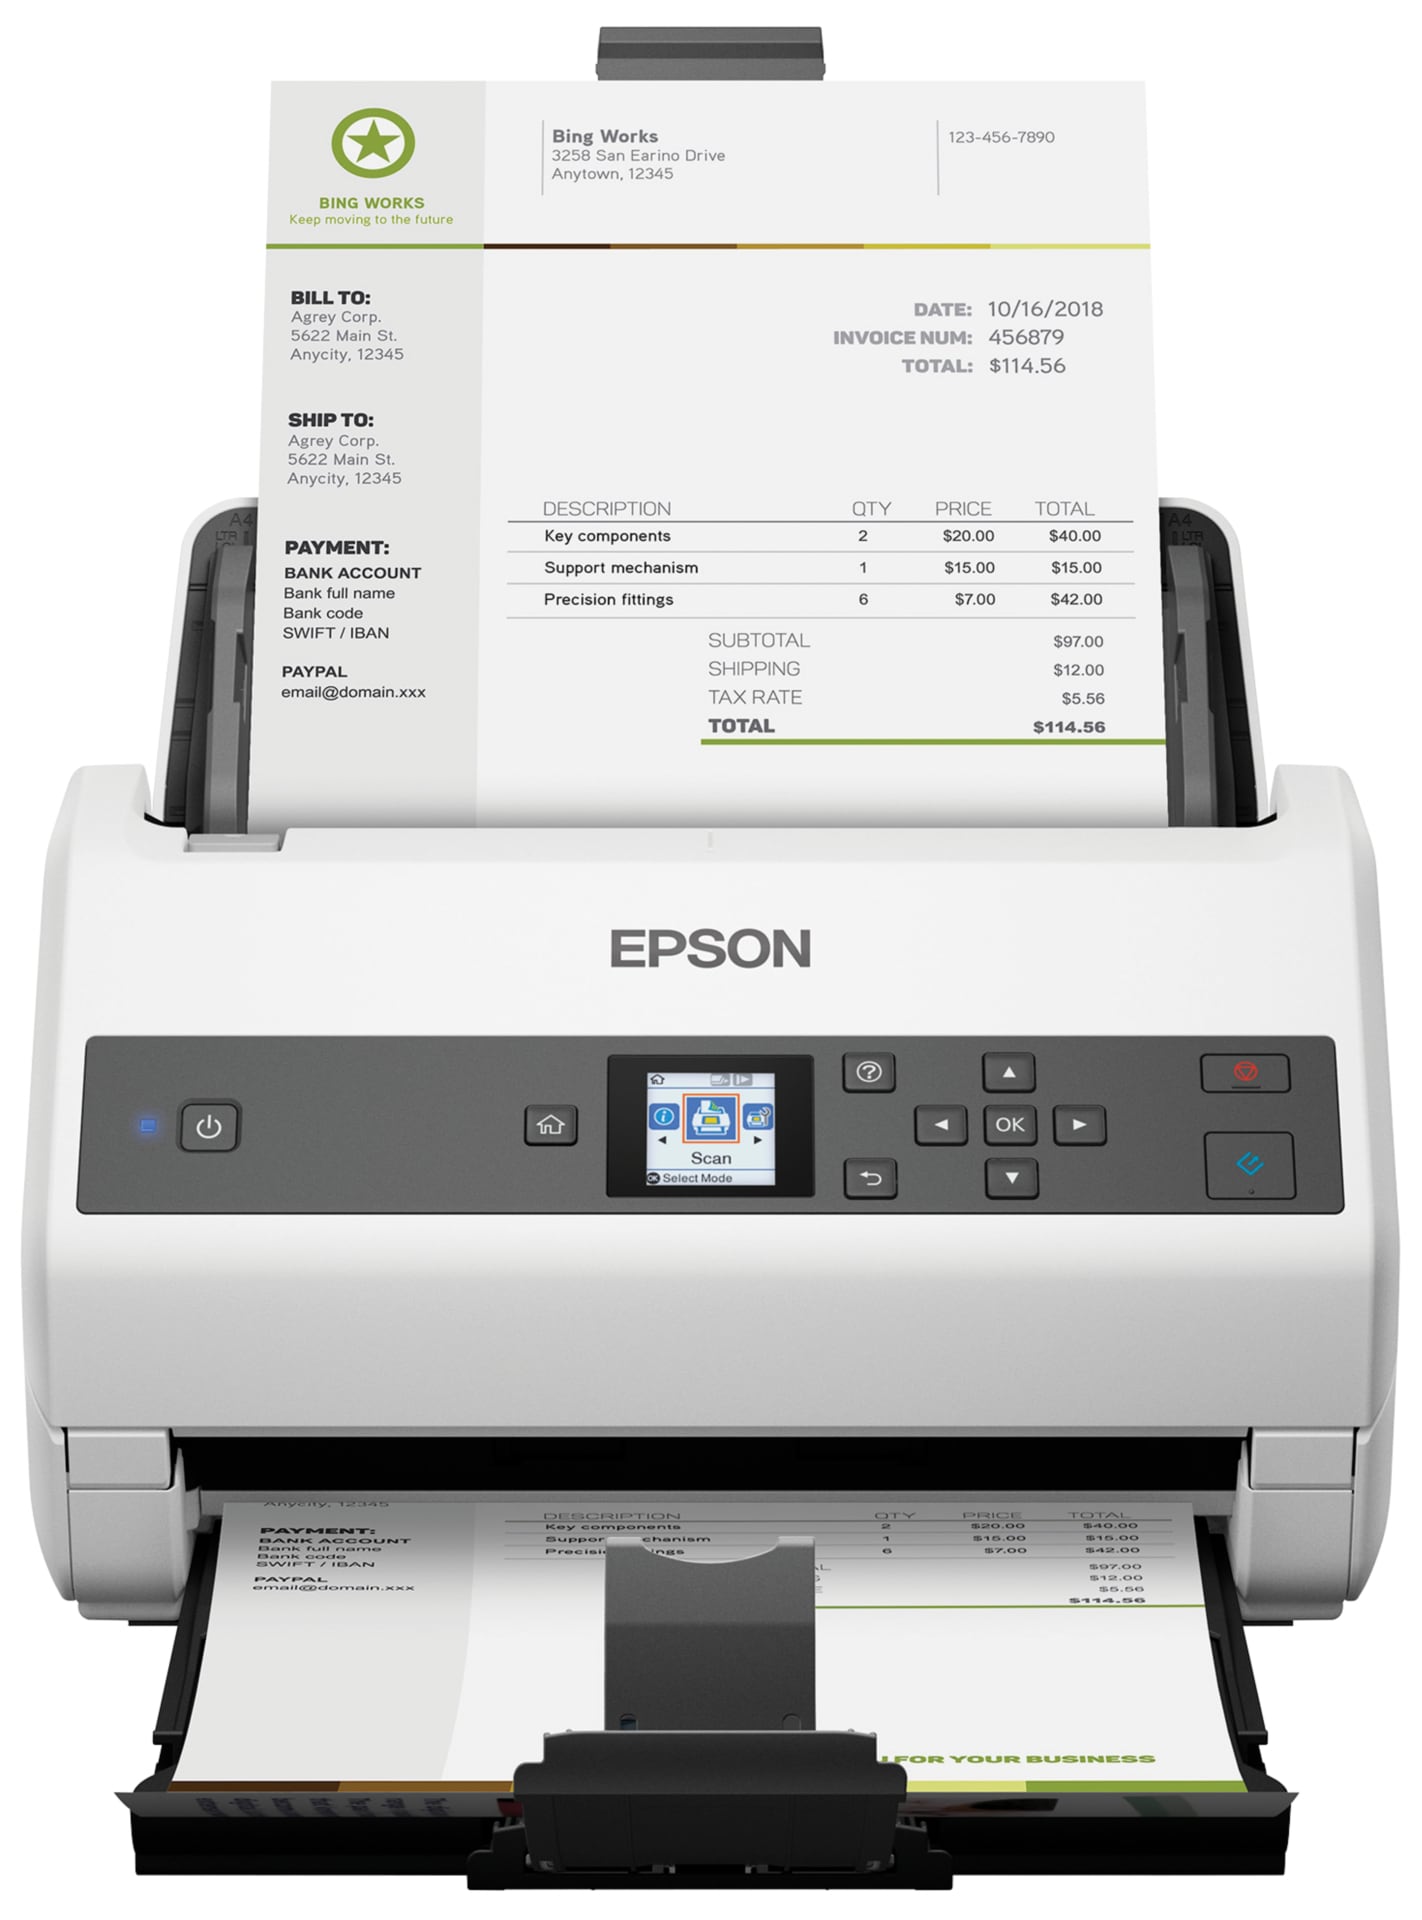 Epson WorkForce DS-870 - document scanner - duplex - desktop - USB 3.0